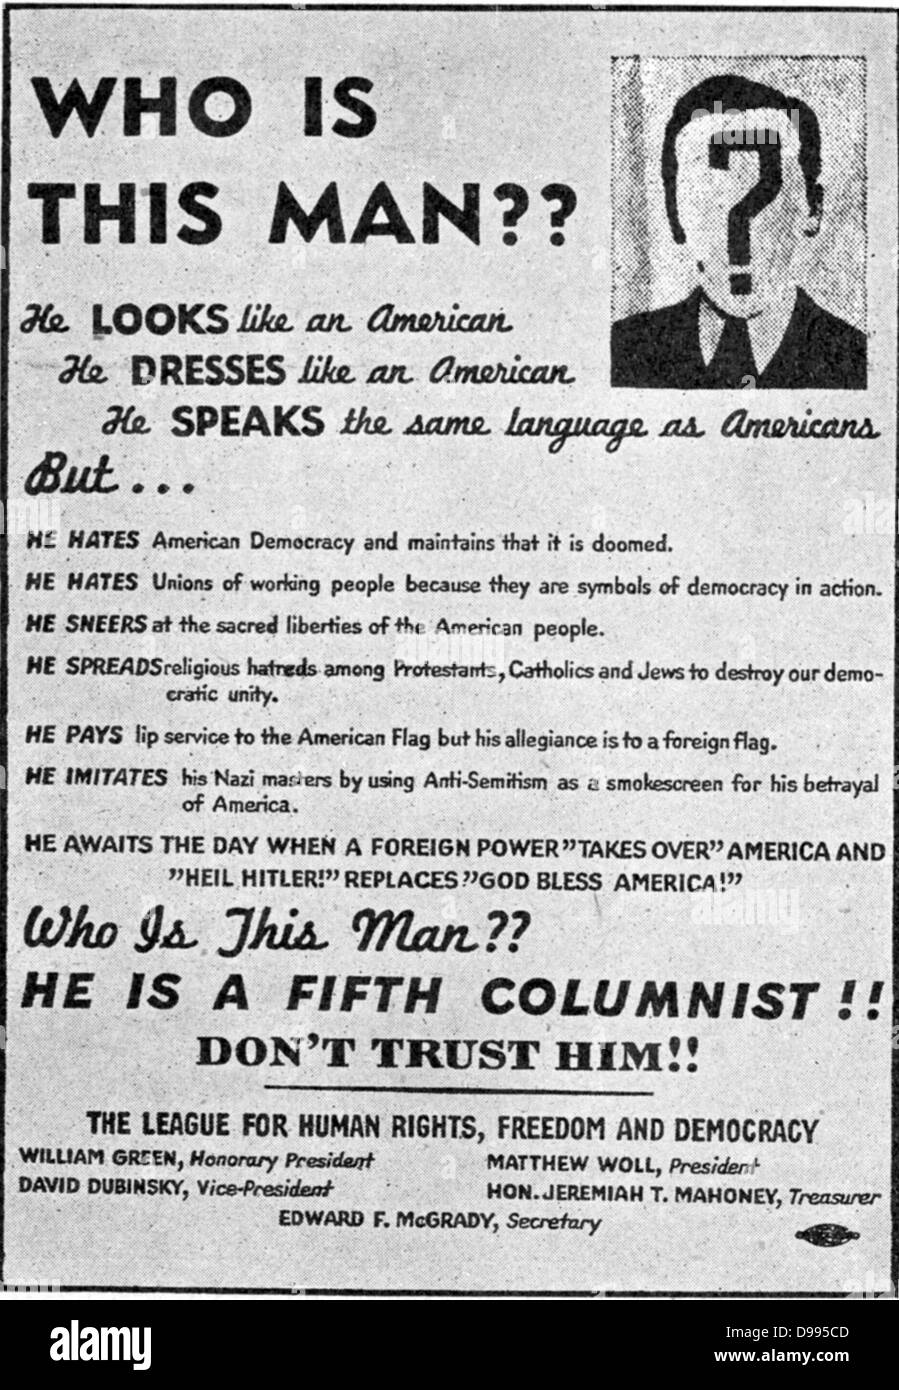 Anti-Nazi Warnung vor dem fünften columinsts. Propaganda in den Vereinigten Staaten während des Zweiten Weltkriegs veröffentlicht, die von der Liga für Menschenrechte, Freiheit und Demokratie. Stockfoto